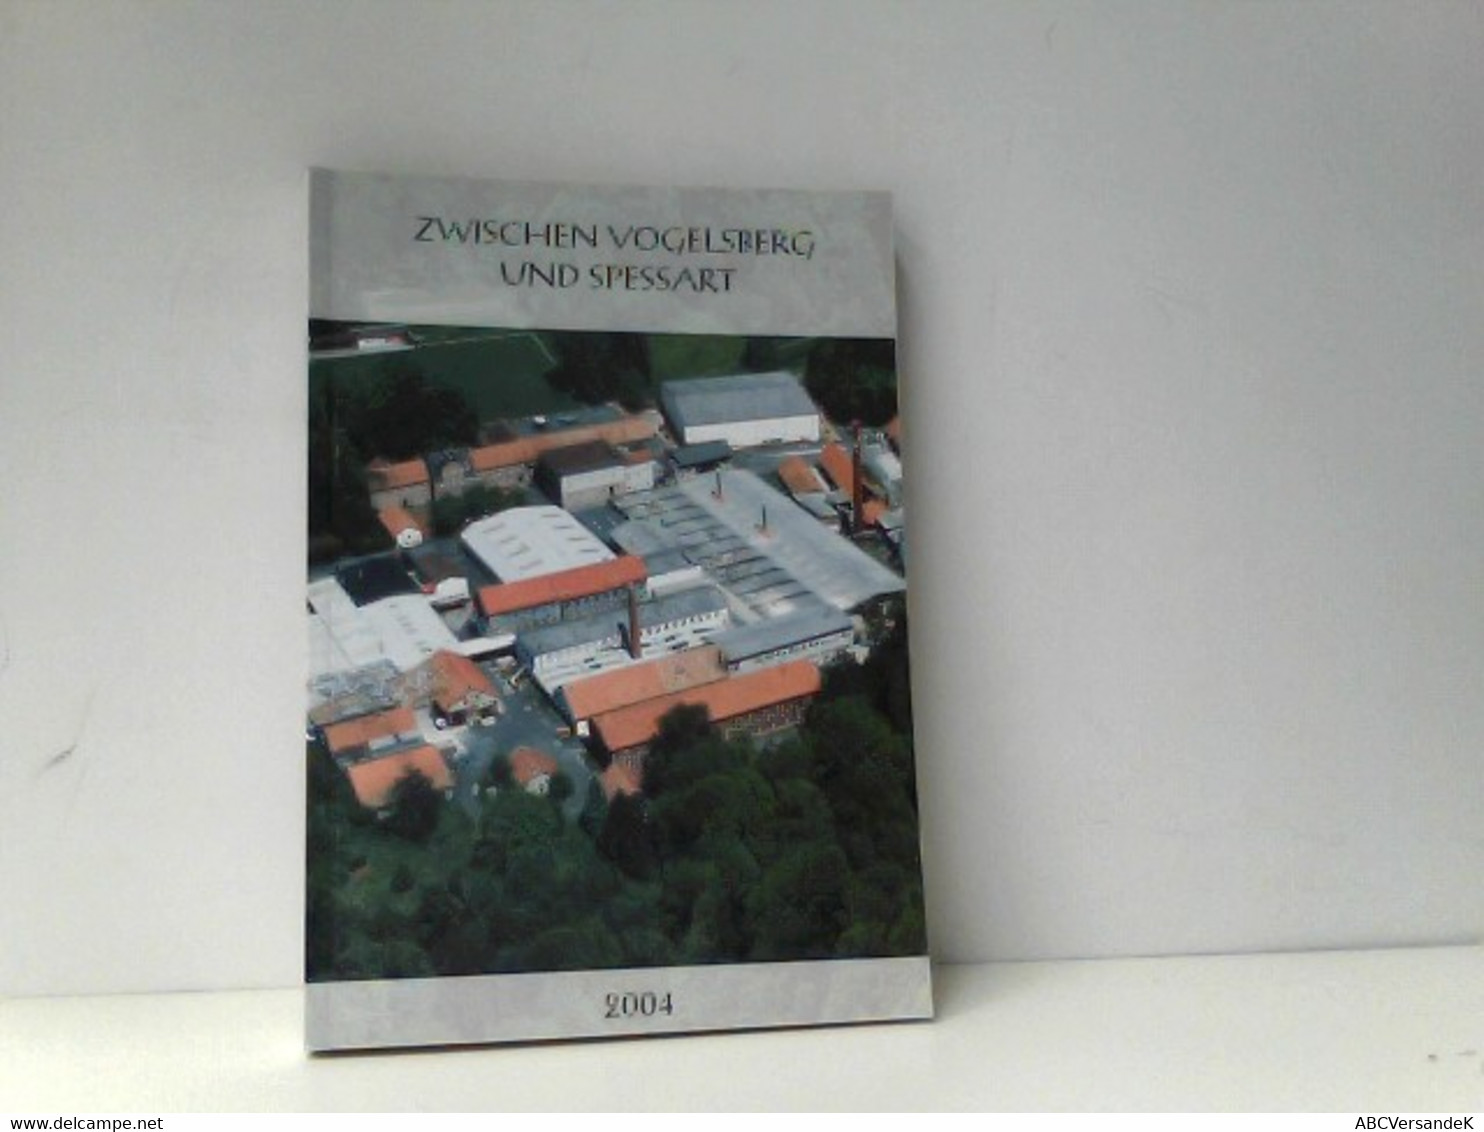 Gelnhäuser Heimat-Jahrbuch 2004 Jahreskalender Für Familie Und Heim In Stadt Und Land Zwischen Vogelsberg Und - Hesse